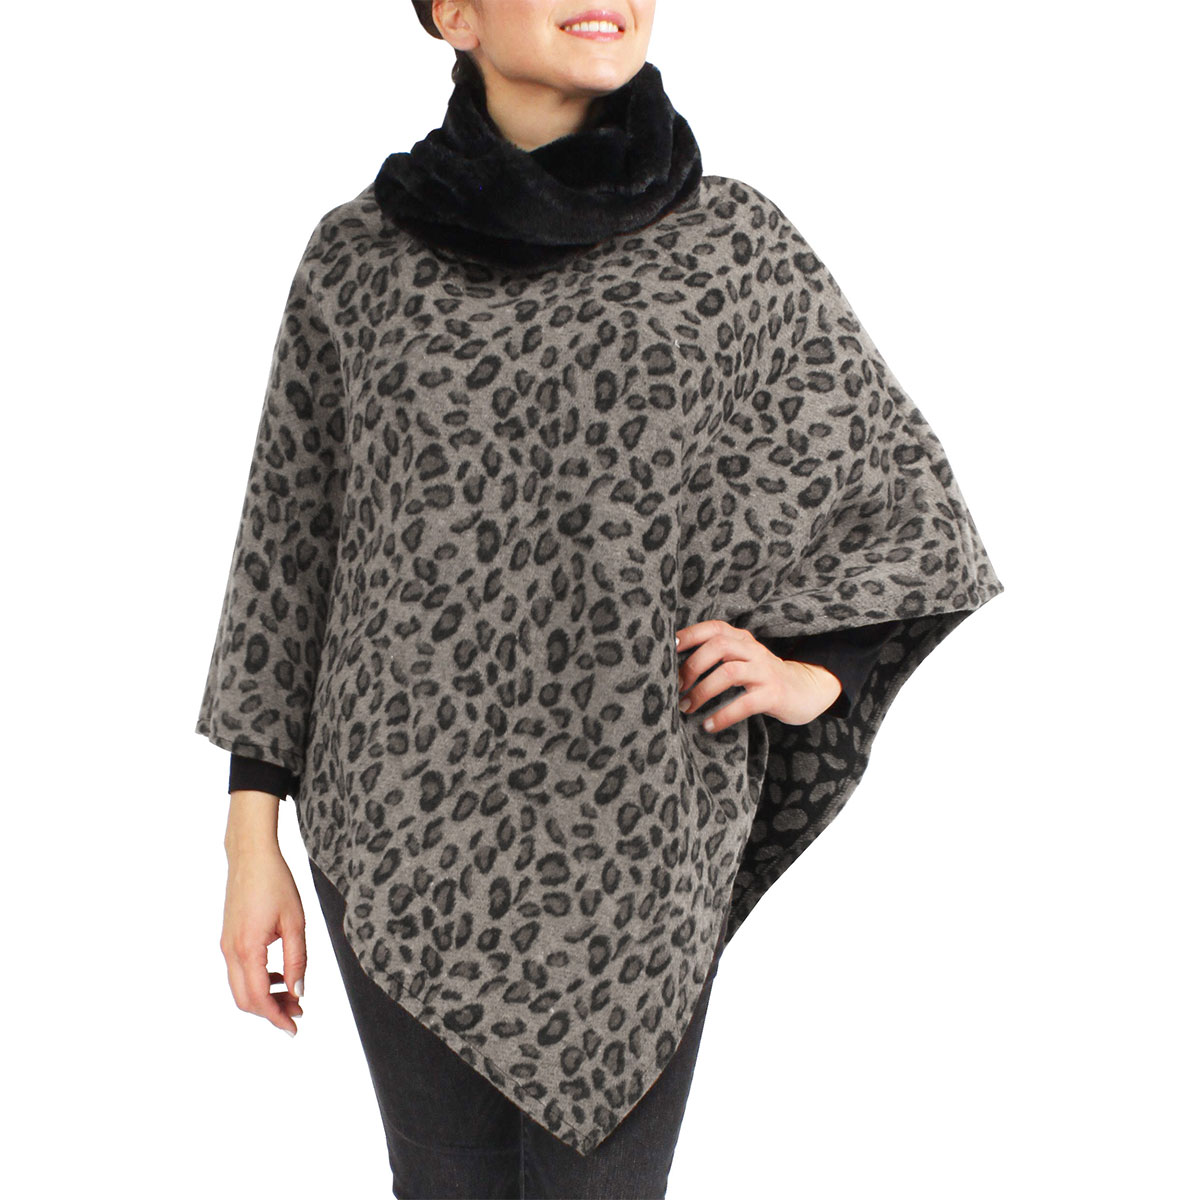 9396 - Grey<br>Leopard Print Poncho w/Faux Fur Collar